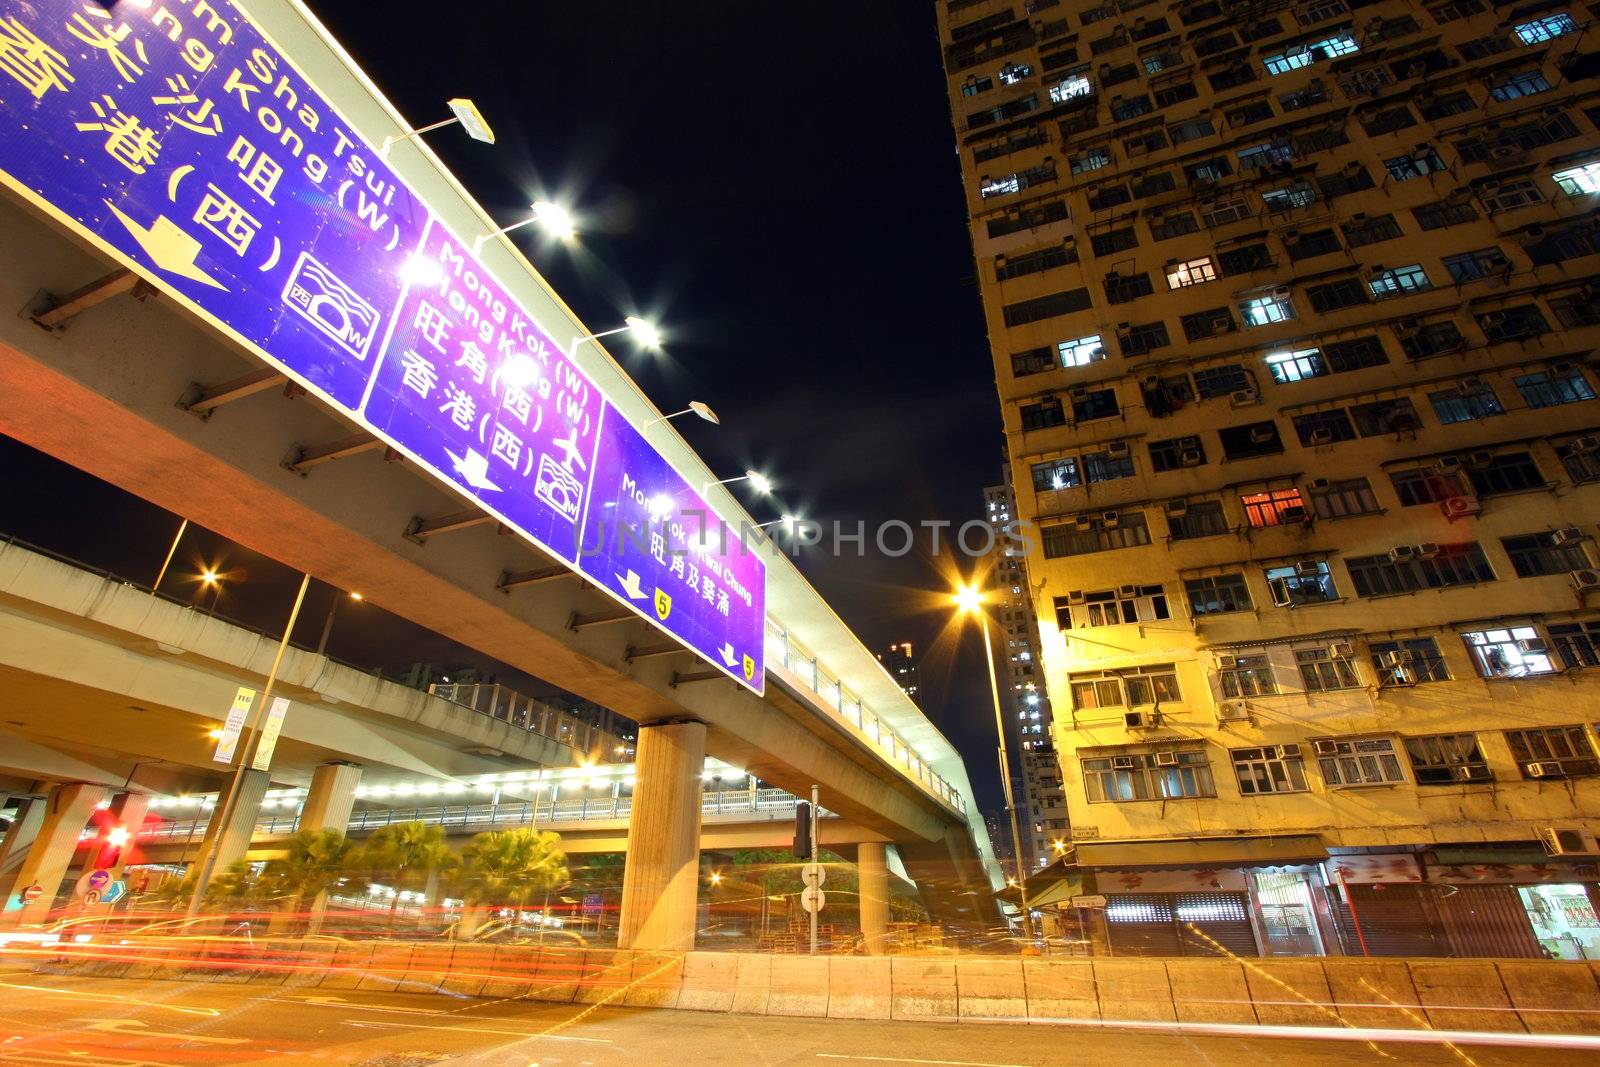 Traffic in Hong Kong at night by kawing921